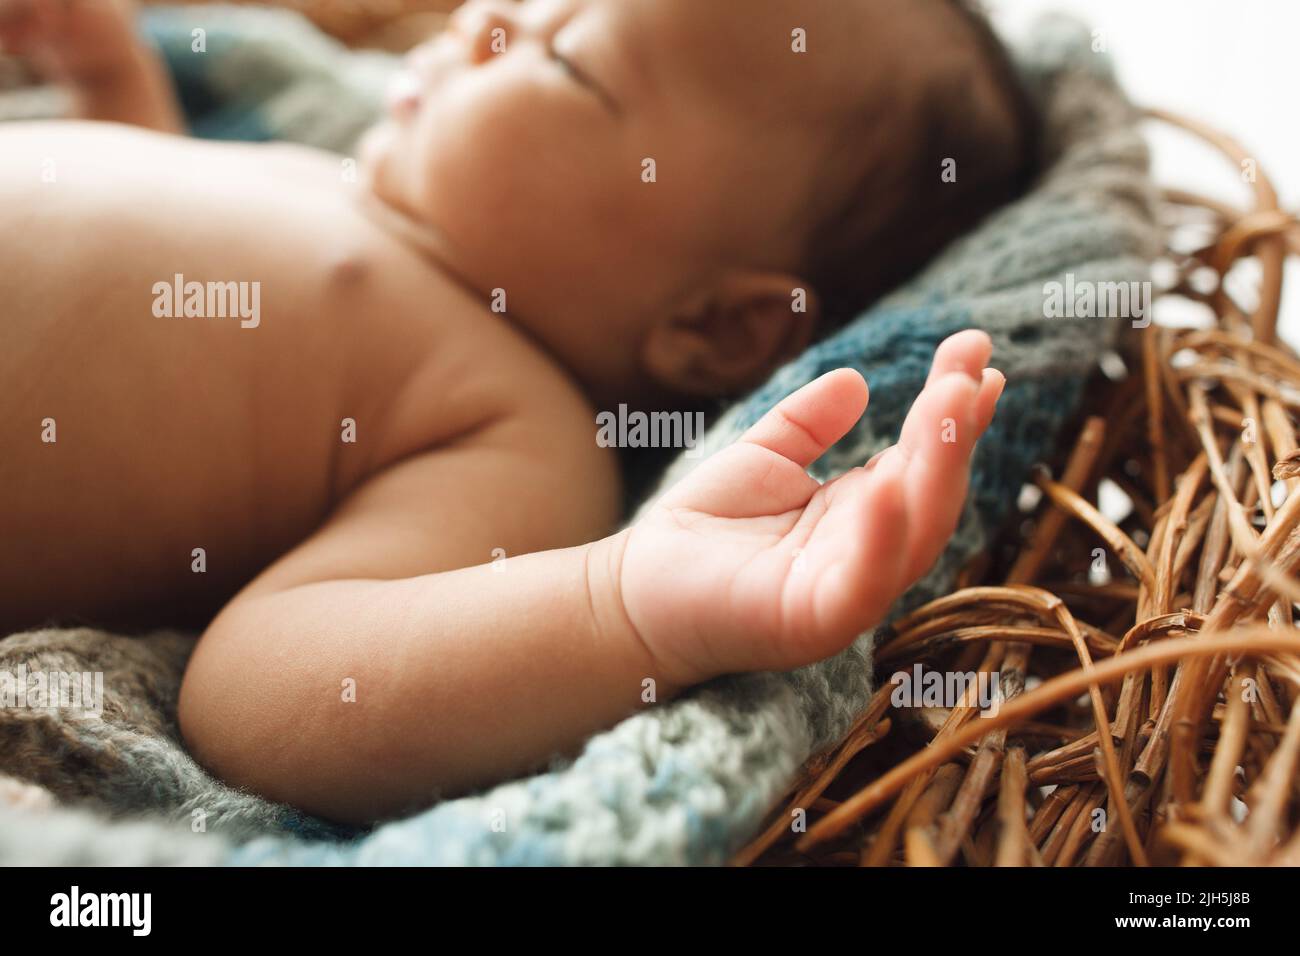 Nouveau-né allongé dans un nid, se concentrer sur la main Banque D'Images